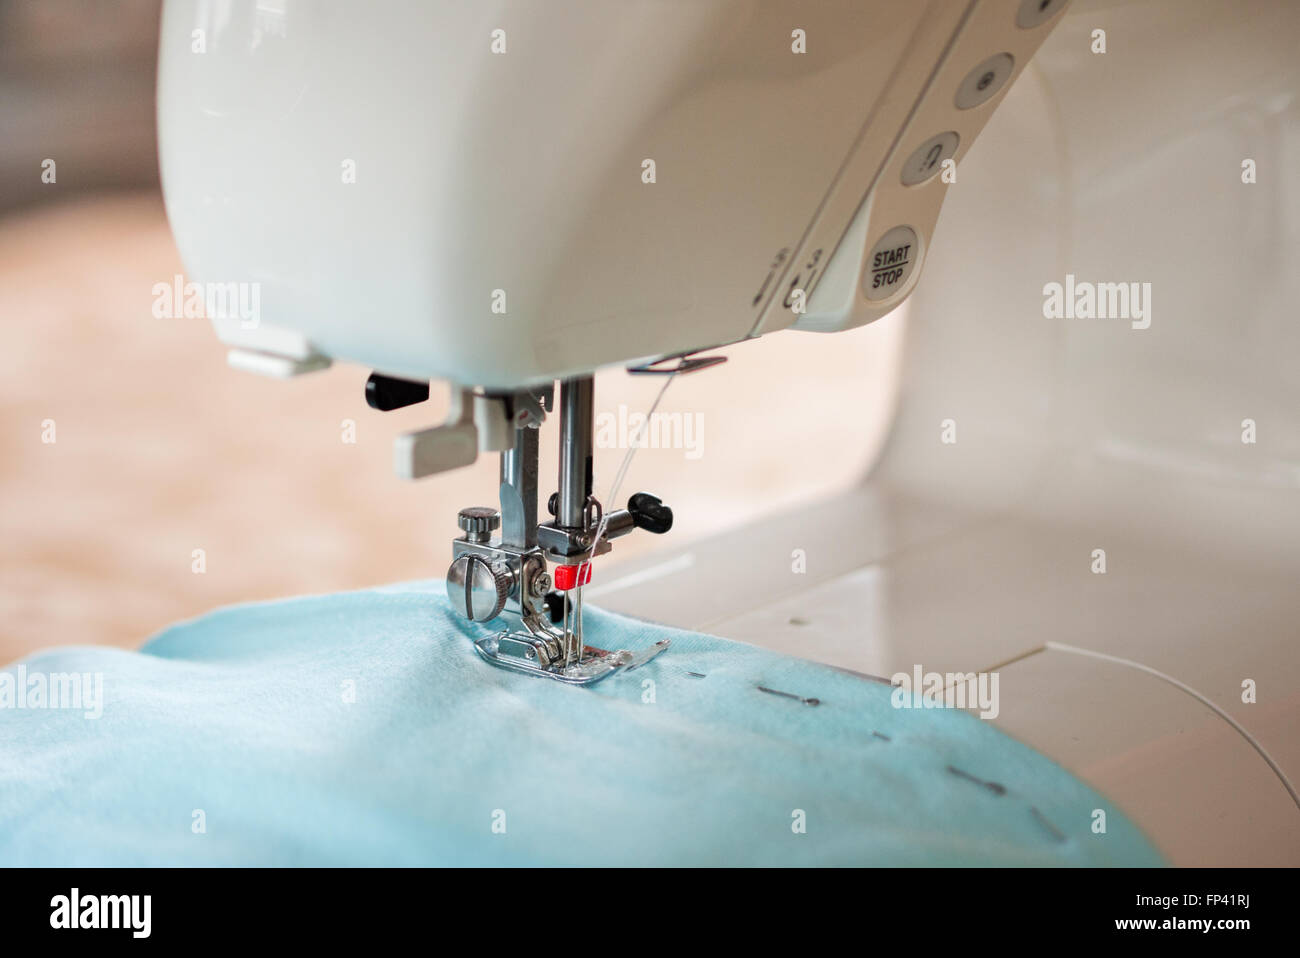 sewing machine working Stock Photo